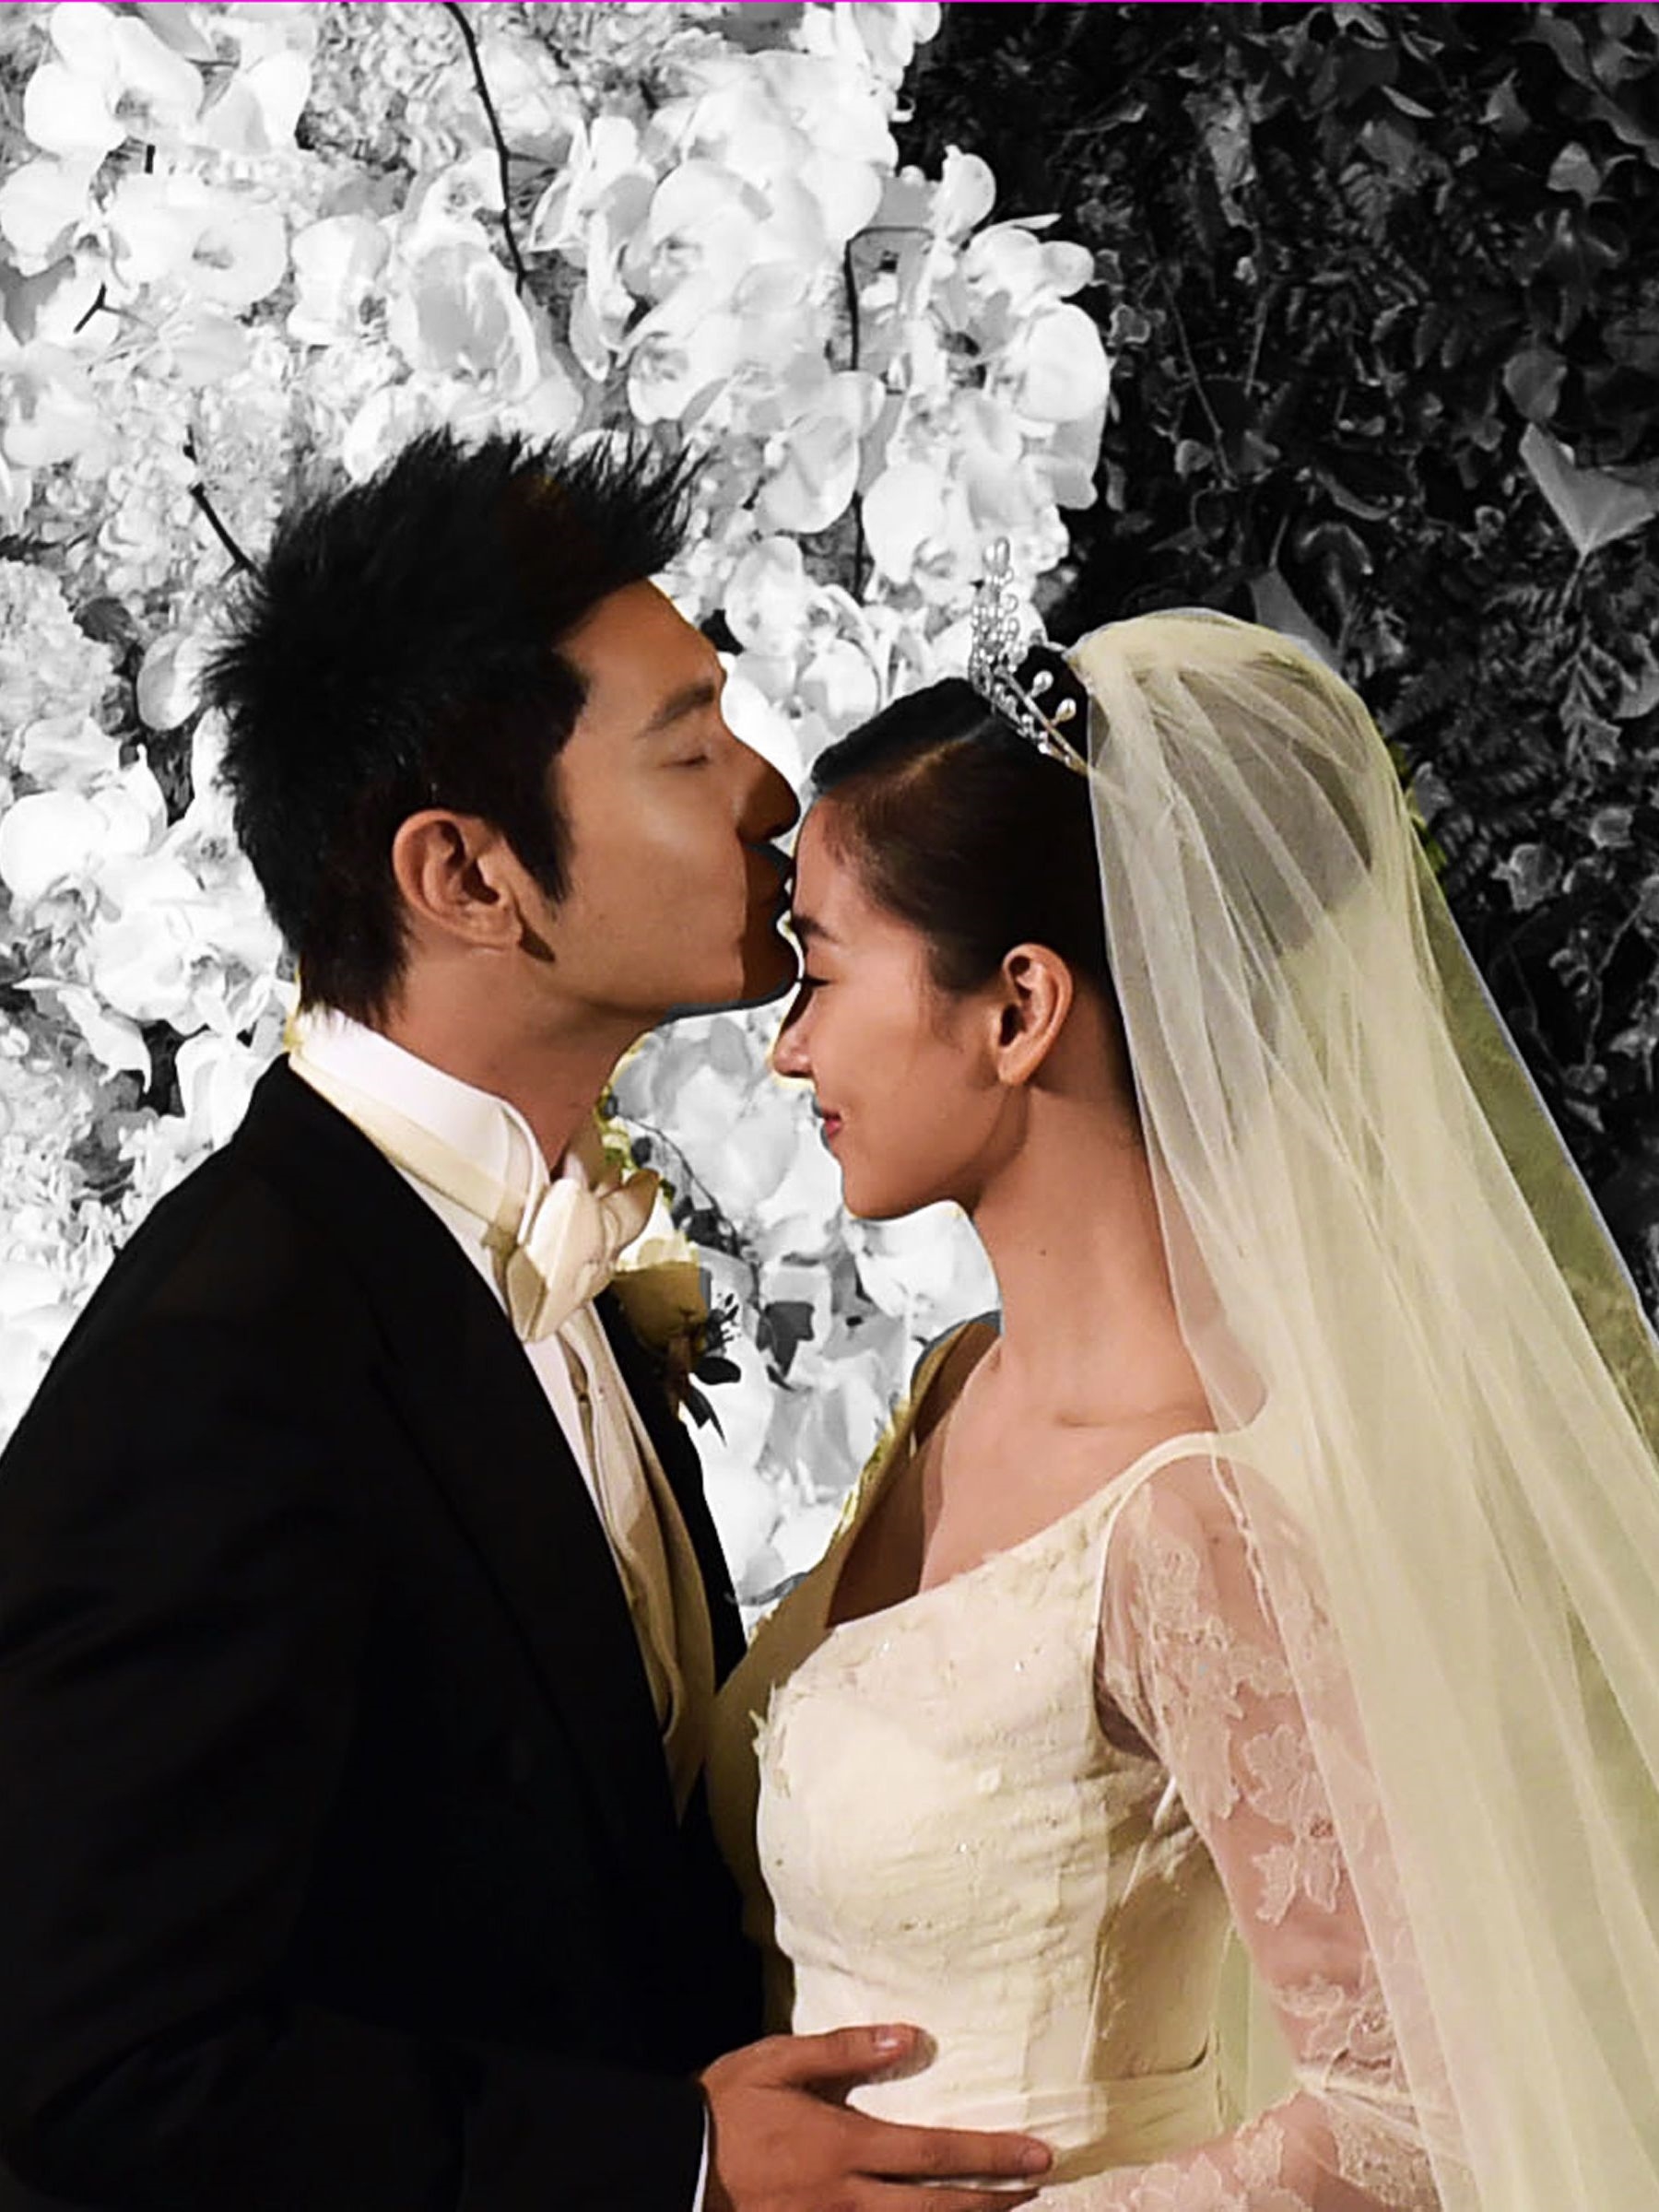 Muôn vàn kiểu hôn 'thể hiện tình yêu' trong lễ cưới của sao Hoa ngữ 